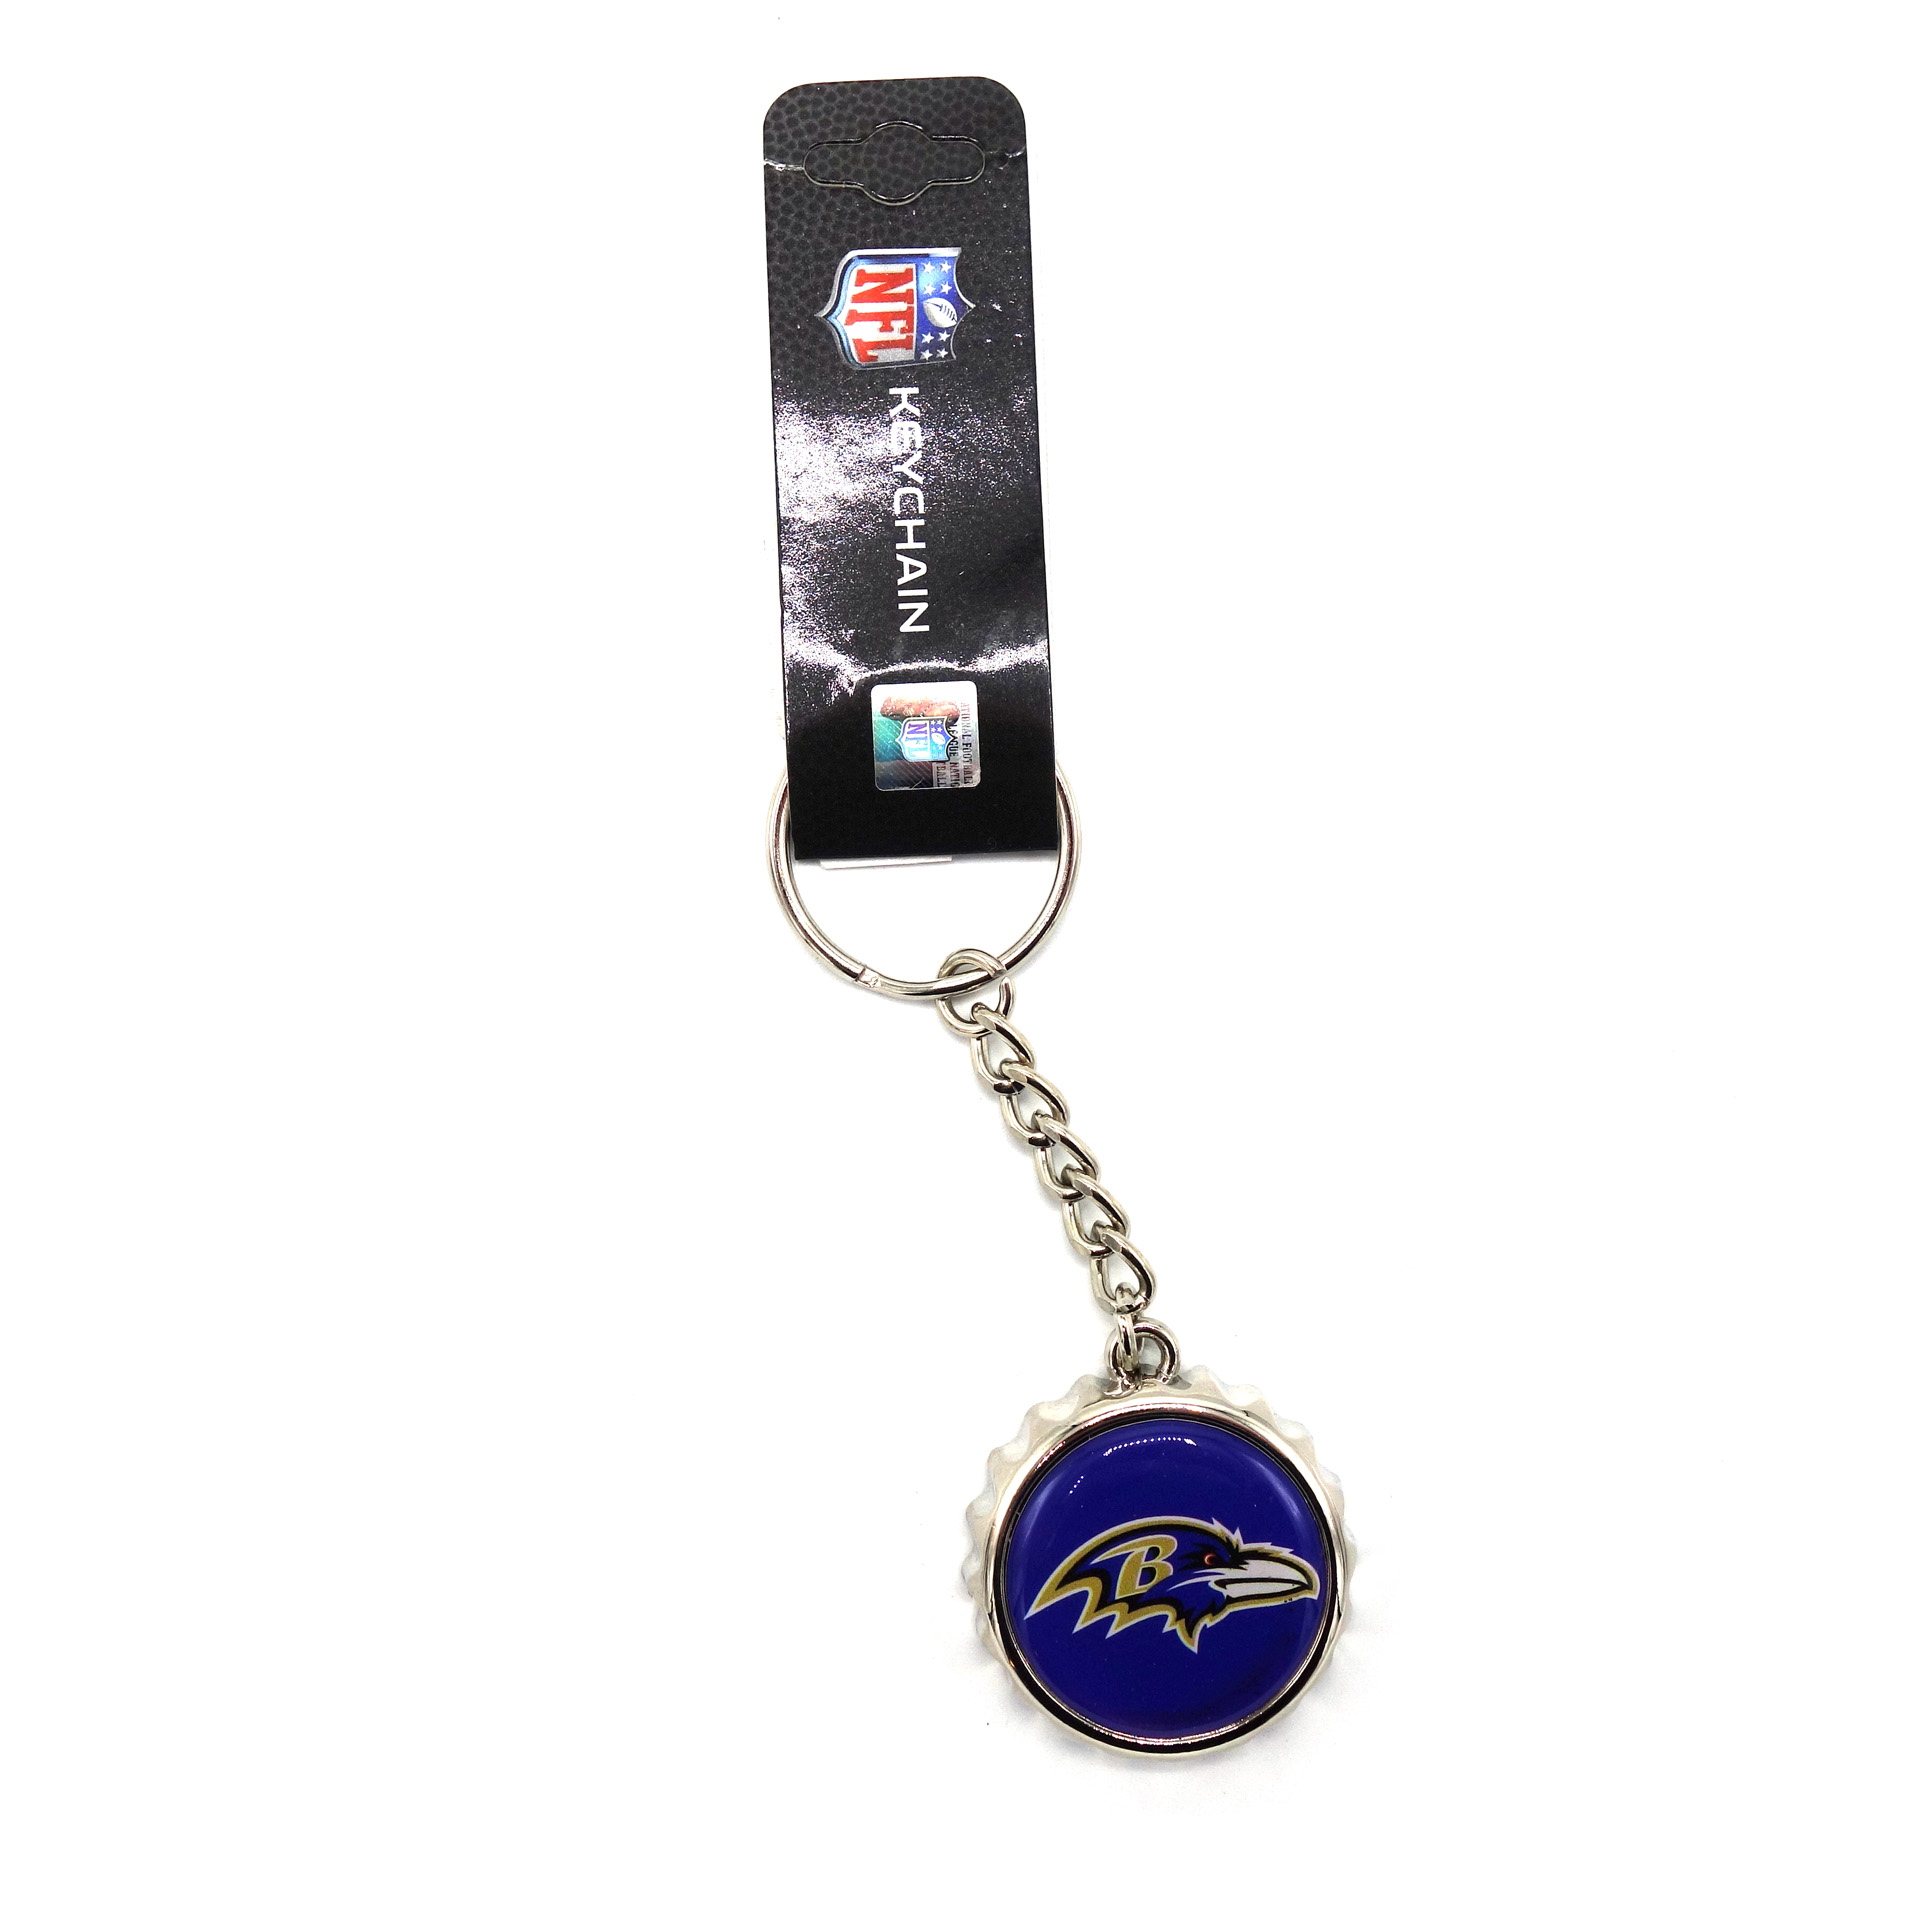 NFL Kronkorken Schlüsselanhänger Baltimore Ravens Flaschenöffner 